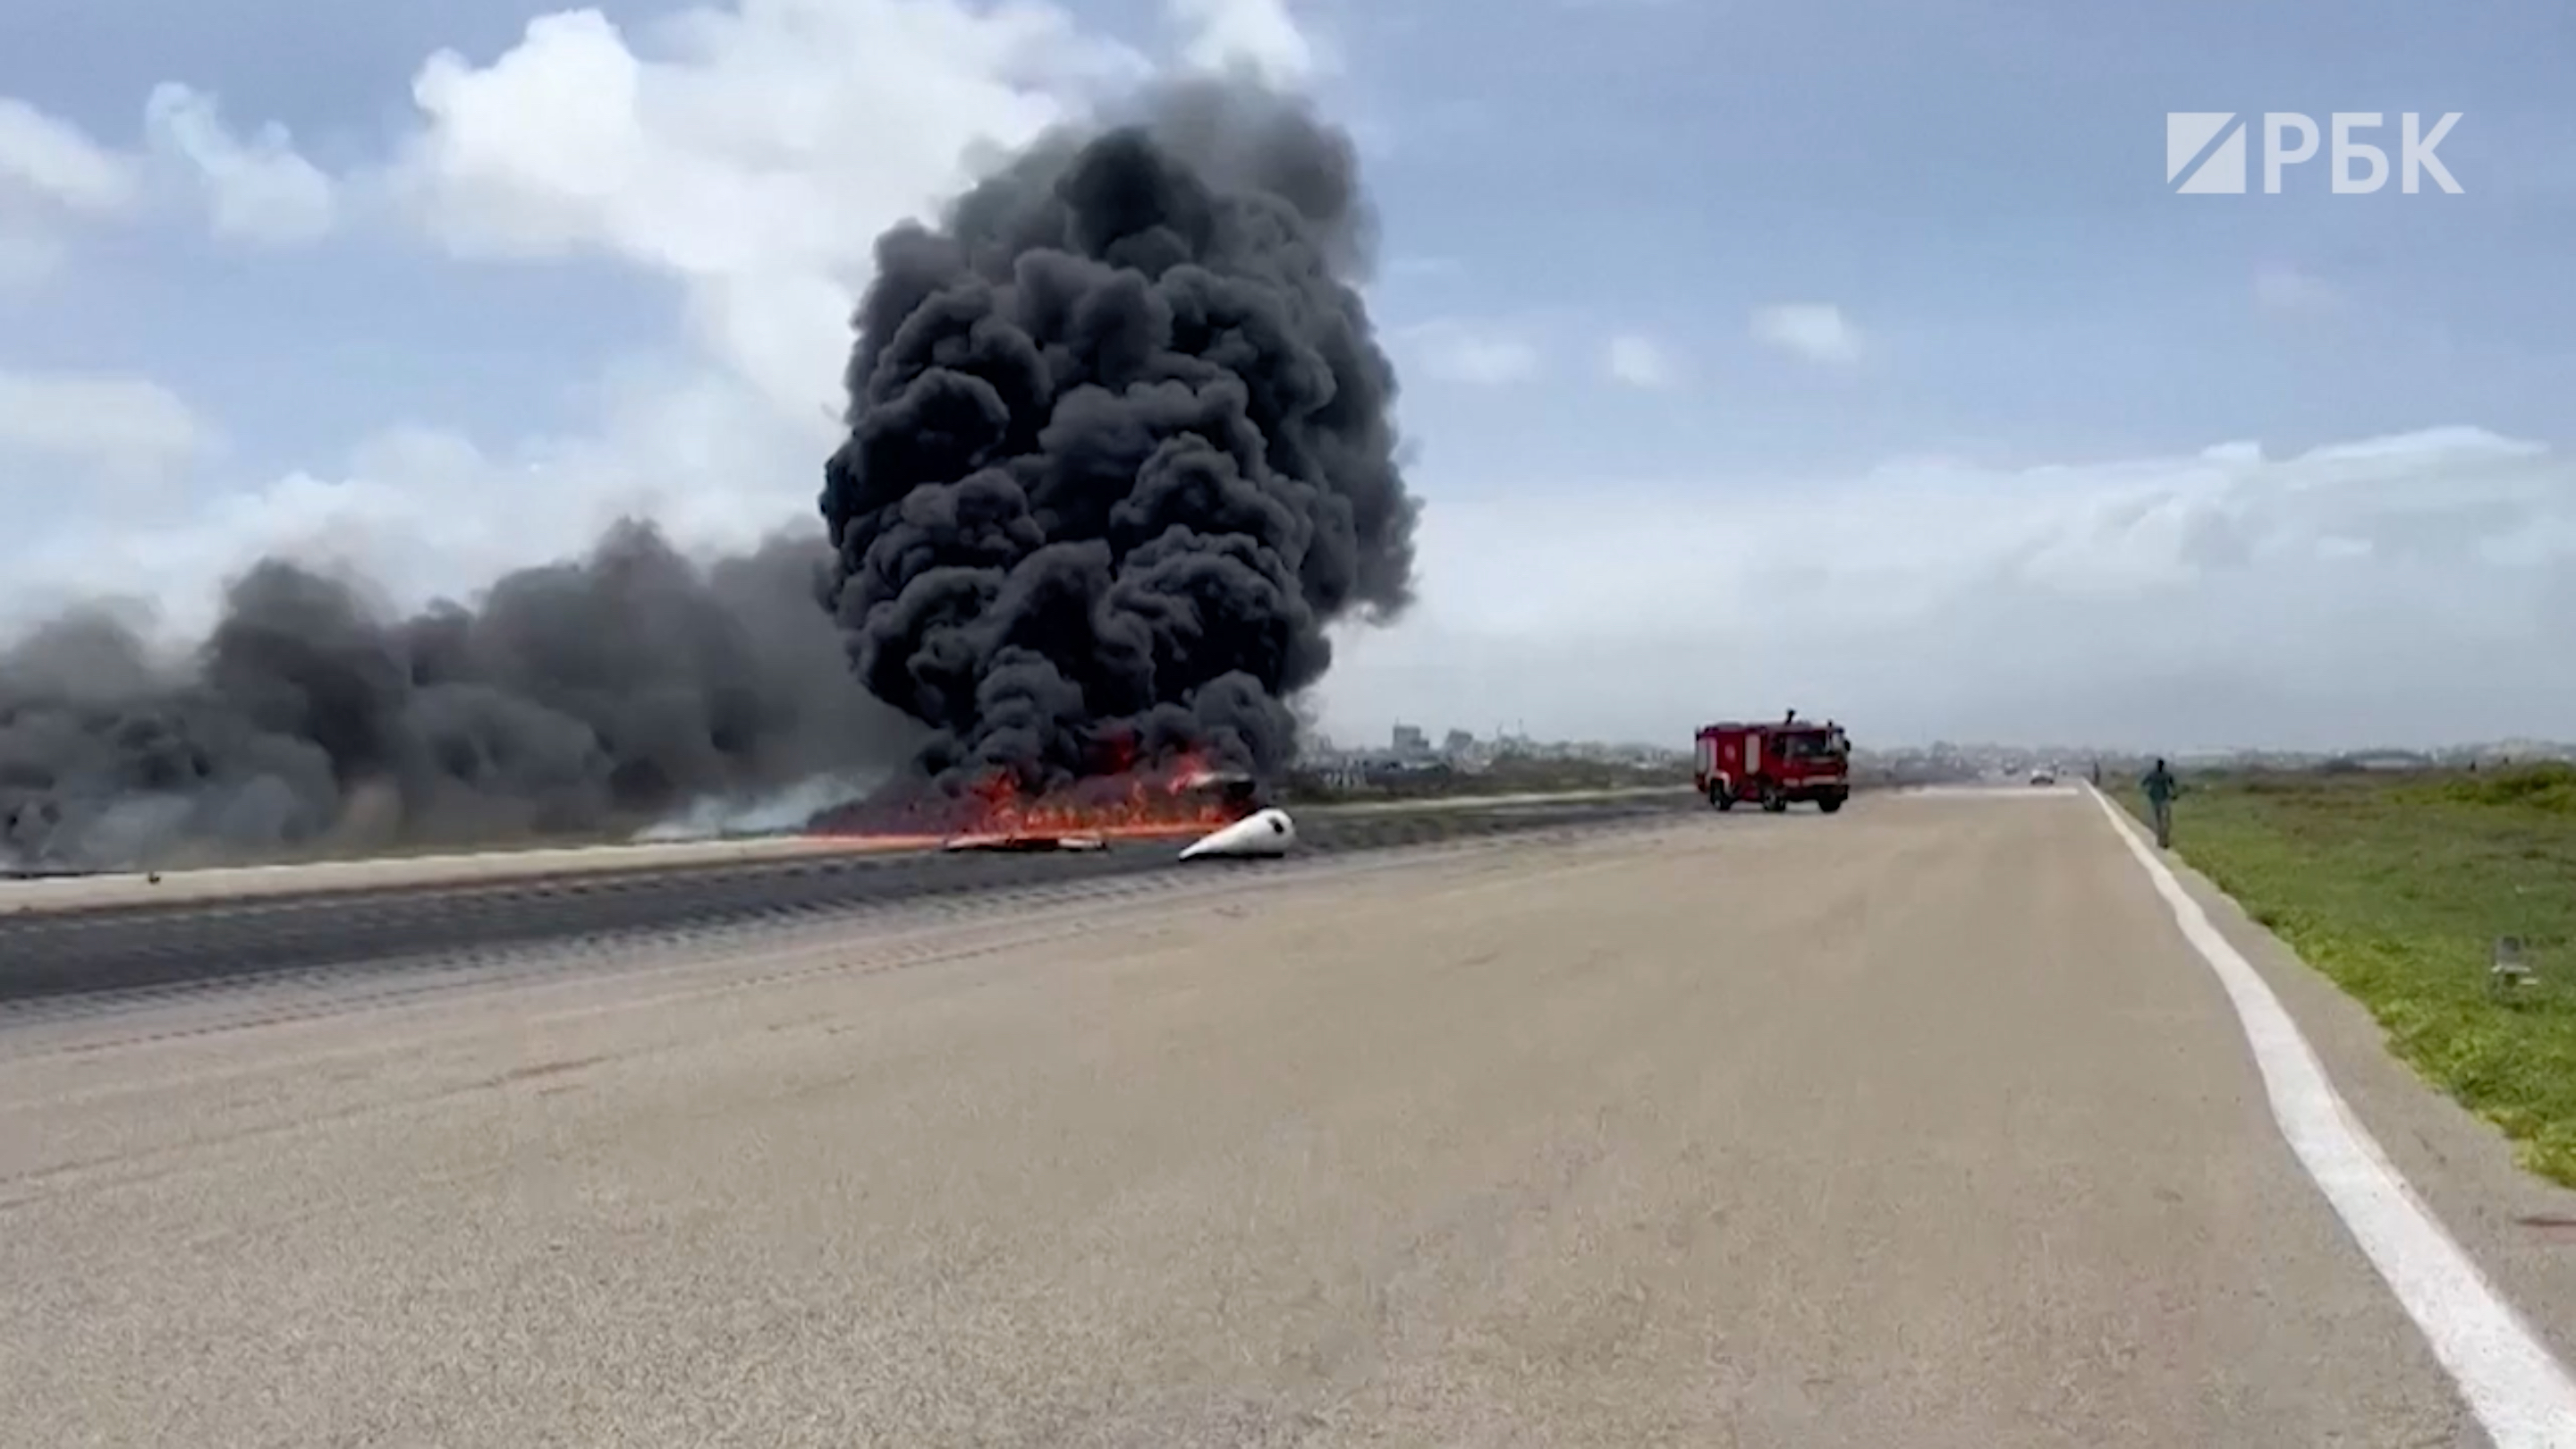 В аэропорту Могадишо самолет перевернулся и загорелся при посадке. Видео